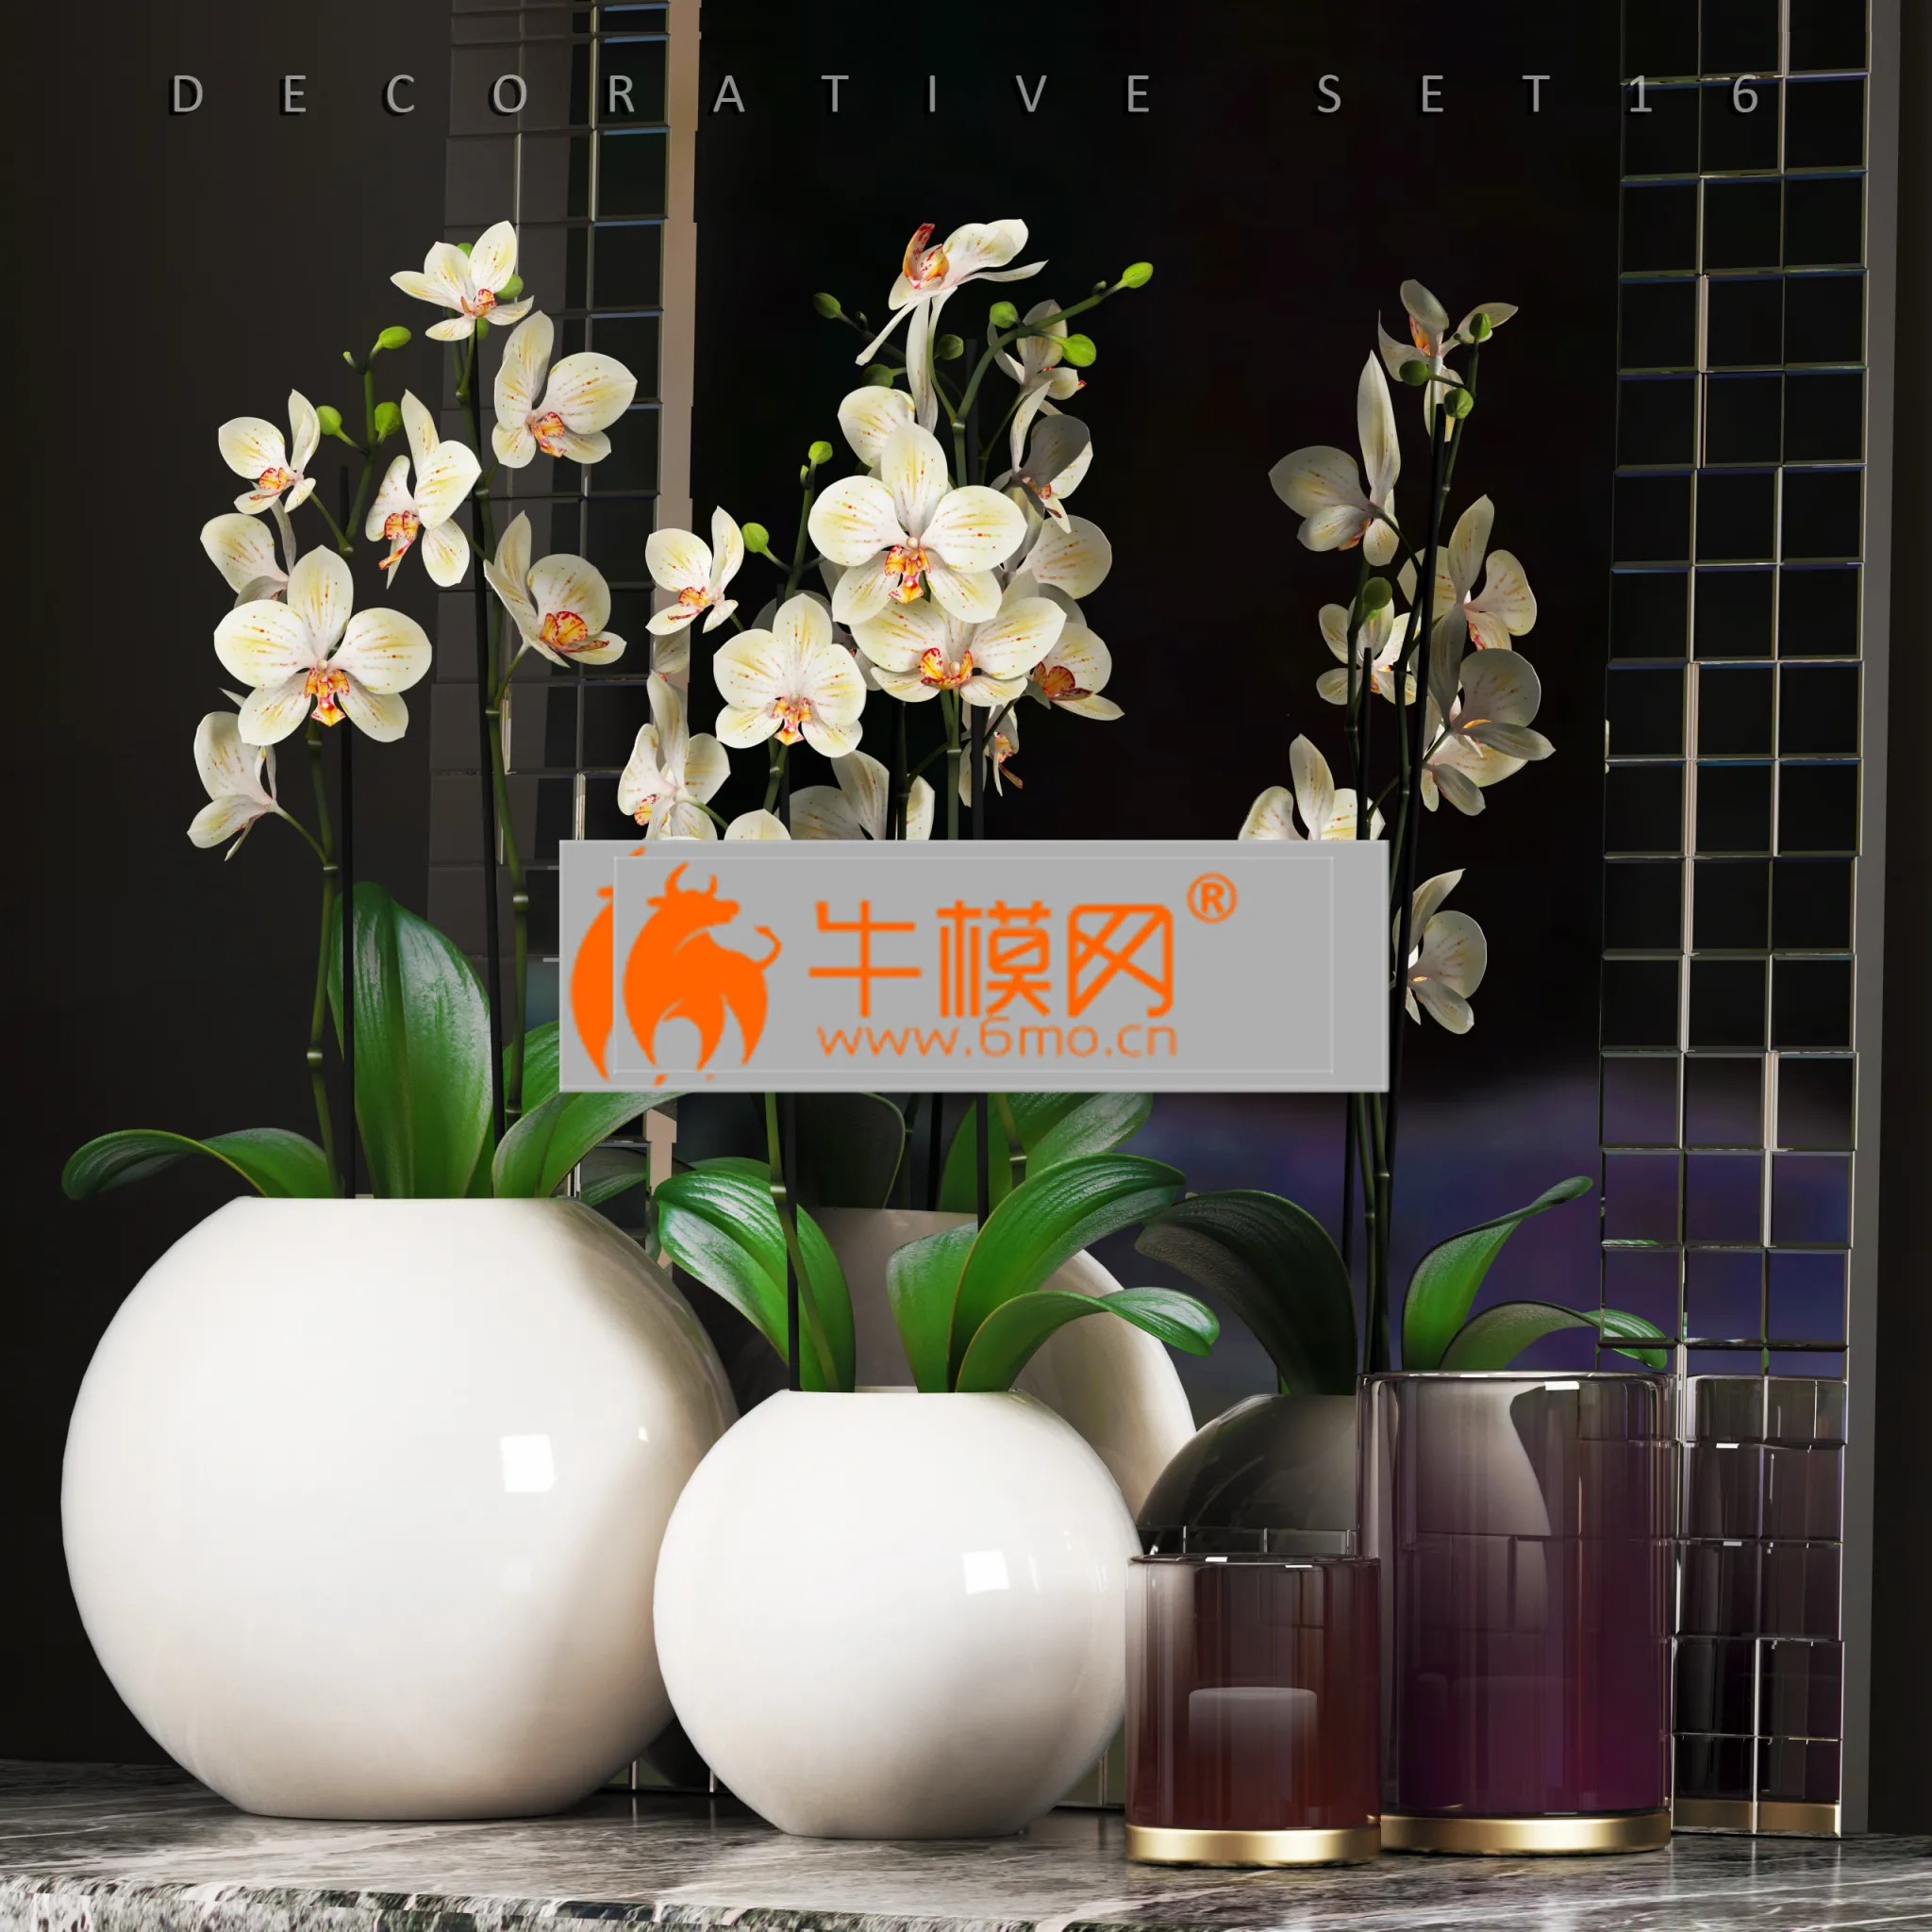 DECORATIVE SET 16 (orchid, vase) – 4704